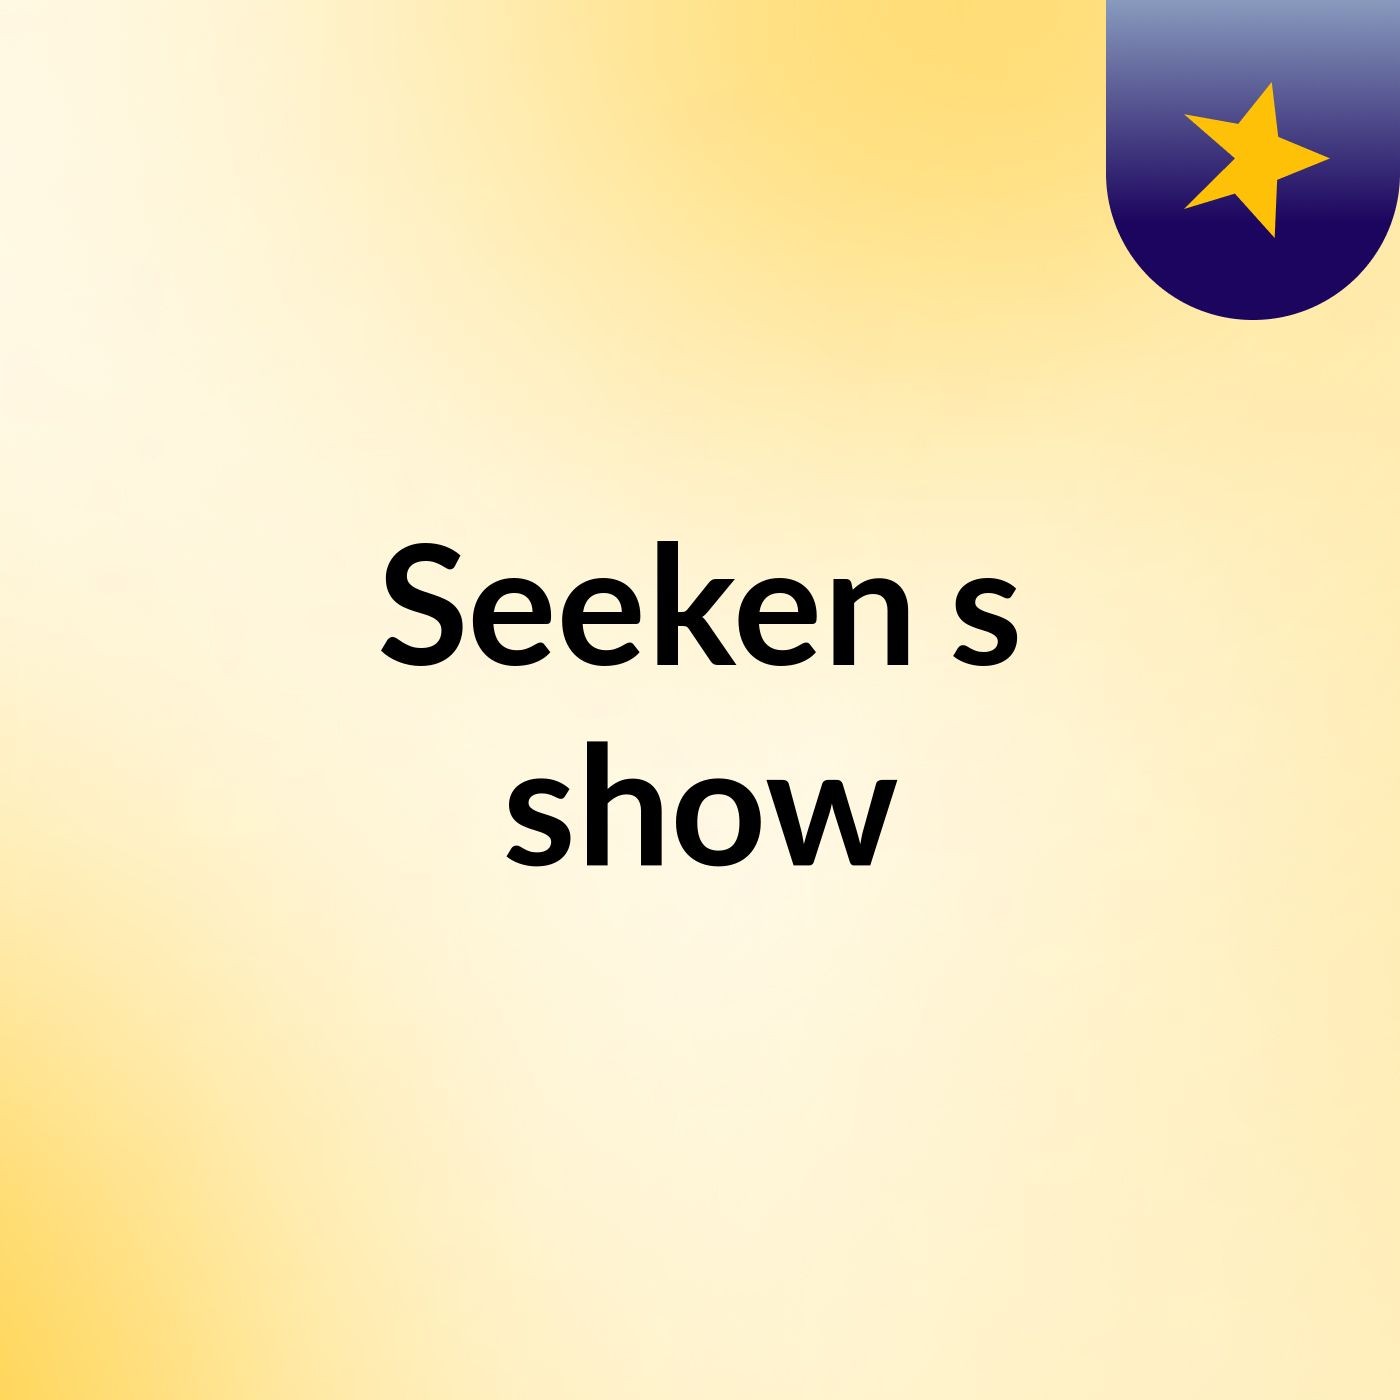 Seeken's show